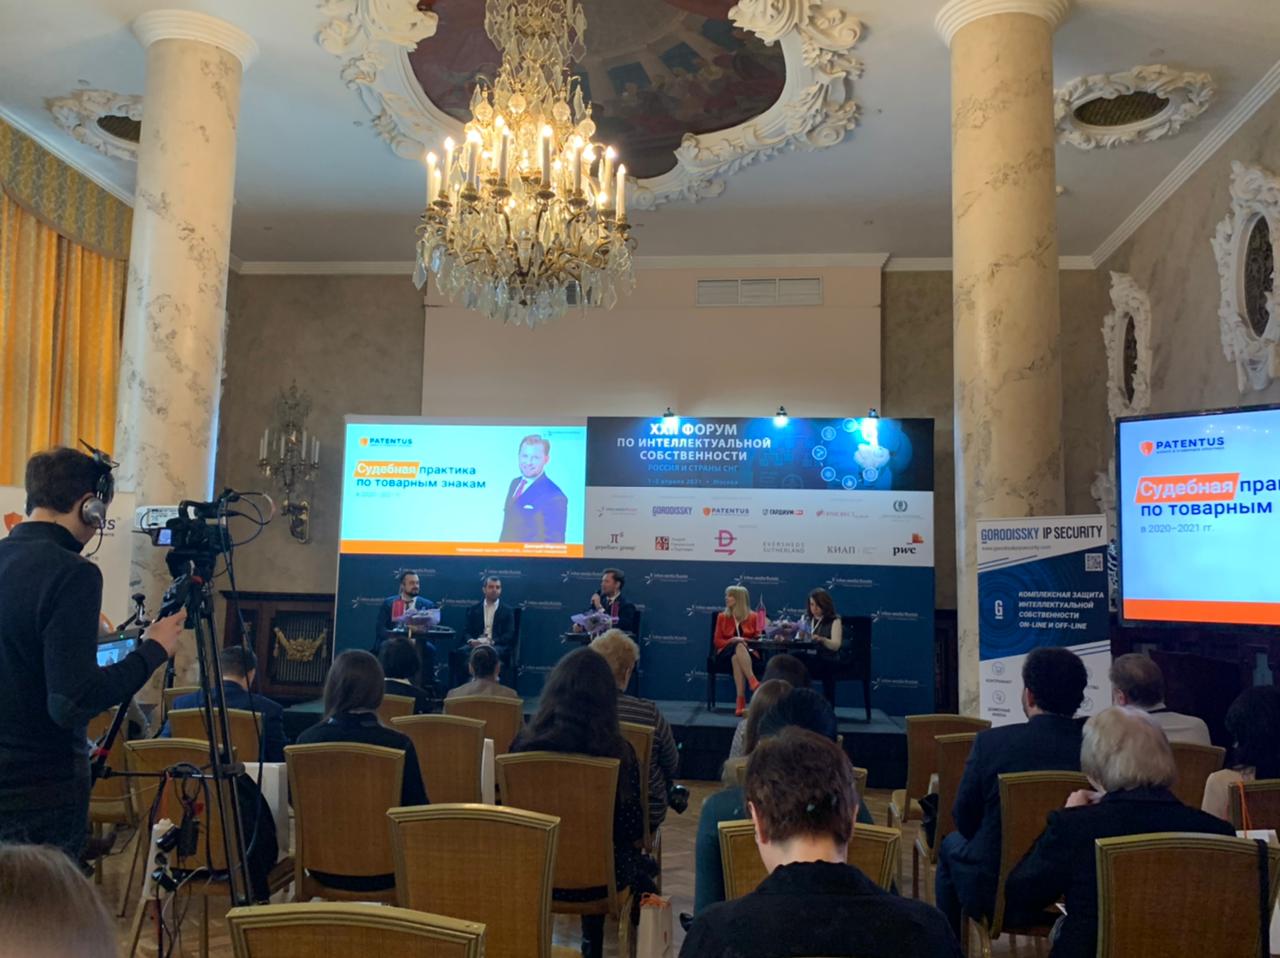 Дмитрий Марканов рассказал о судебной практике за 2020 год на XXII Форуме по интеллектуальной собственности